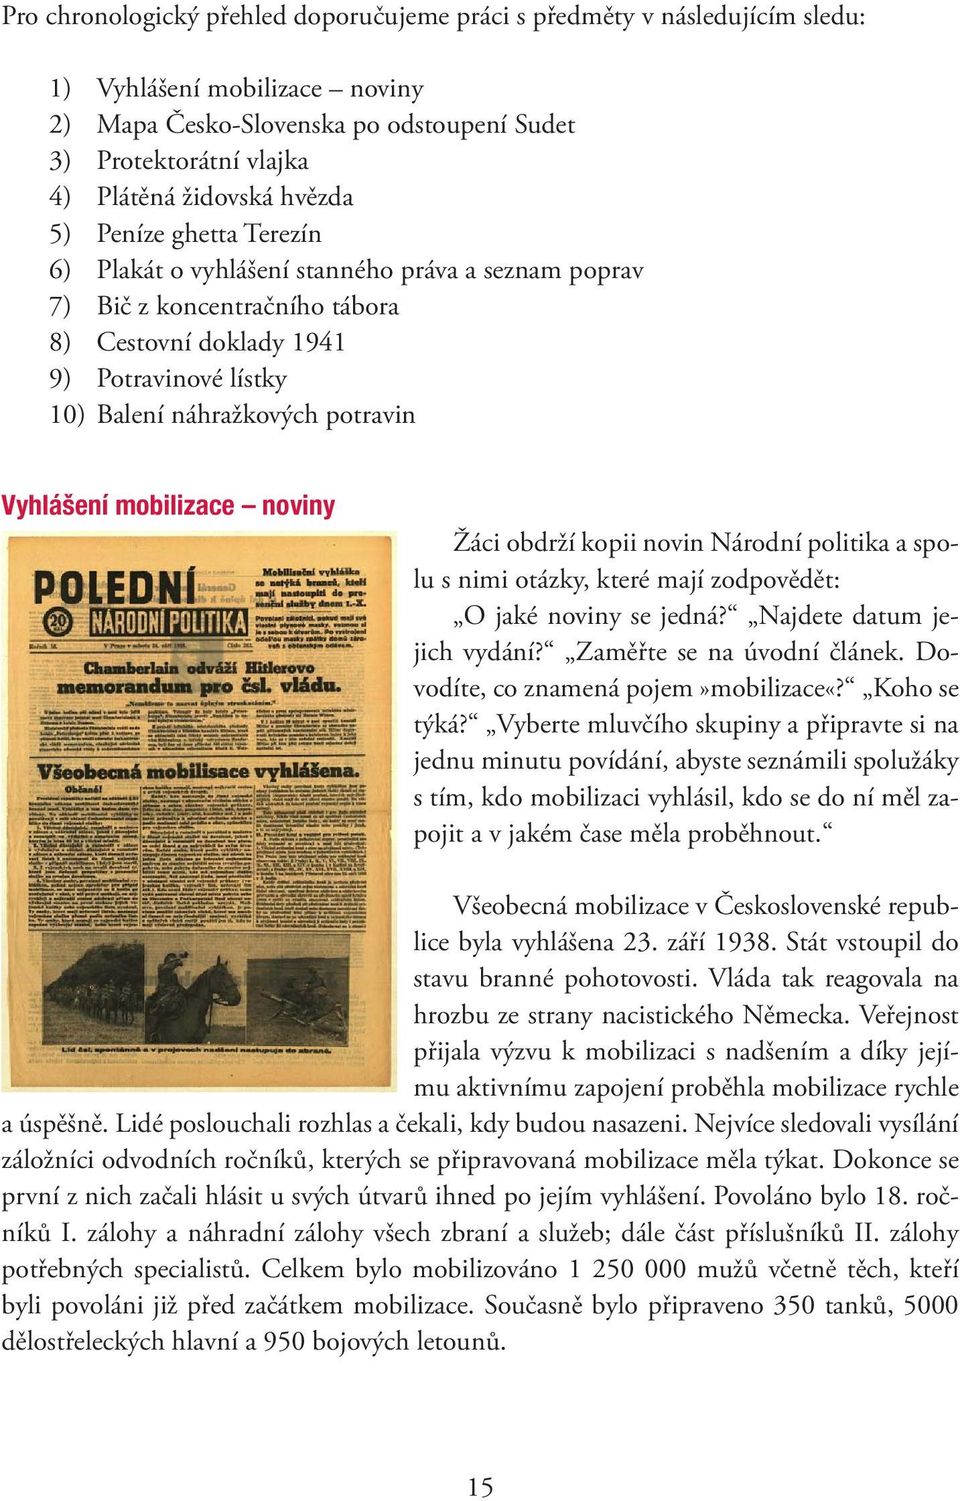 Vyhlášení mobilizace noviny Žáci obdrží kopii novin Národní politika a spolu s nimi otázky, které mají zodpovědět: O jaké noviny se jedná? Najdete datum jejich vydání? Zaměřte se na úvodní článek.